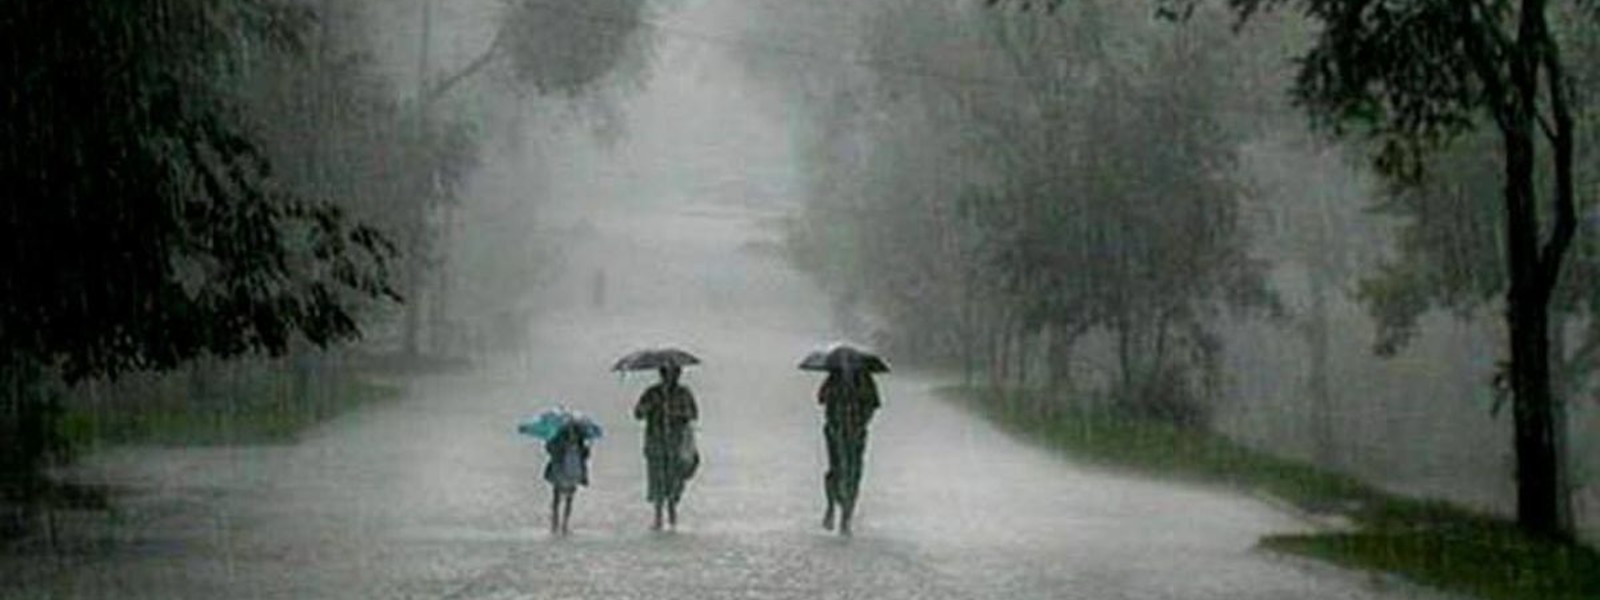 Heavy Rains experienced in many areas